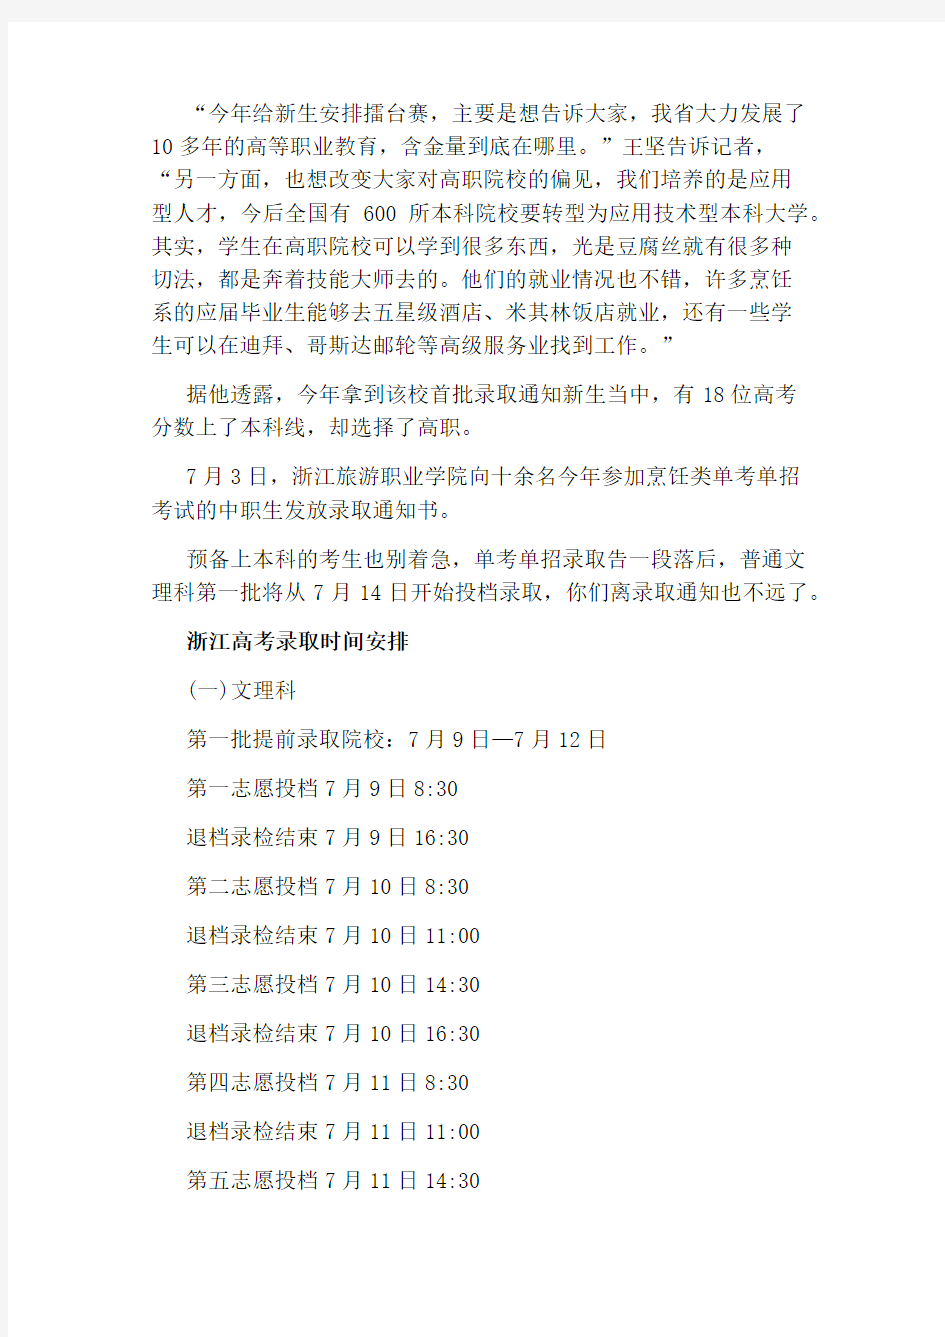 2020浙江高考首批录取通知书7月3日开始发放